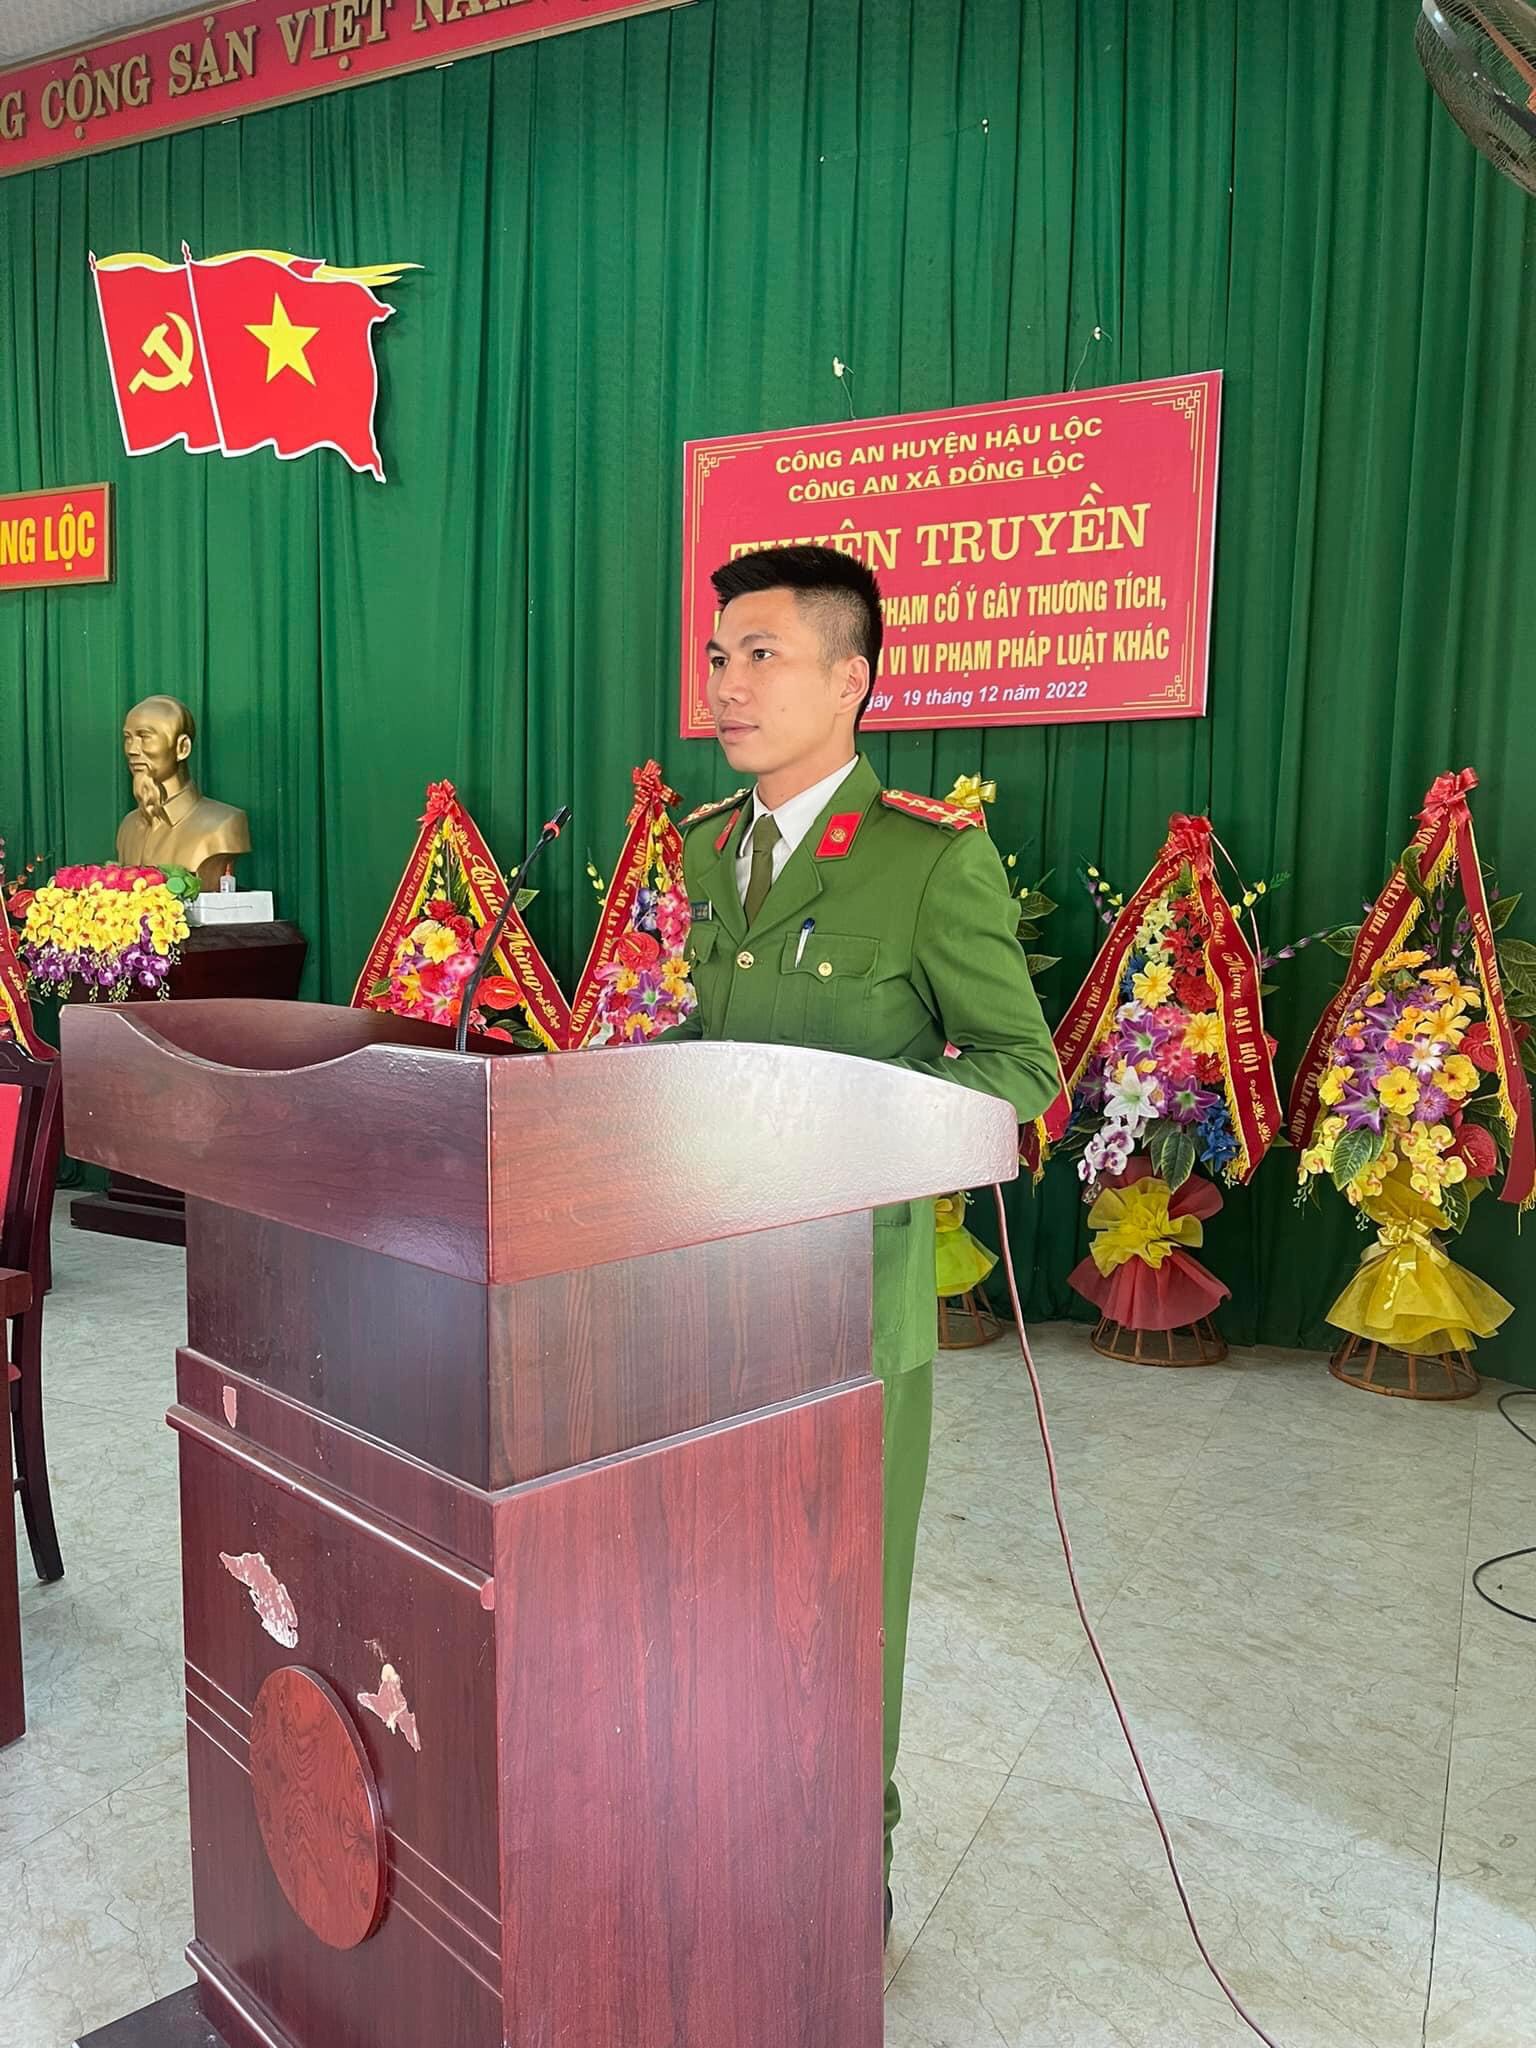 Tuyên truyền phòng, chống tội phạm trong nhà trường và tại khu dân cư trên địa bàn xã Đồng Lộc, huyện Hậu Lộc